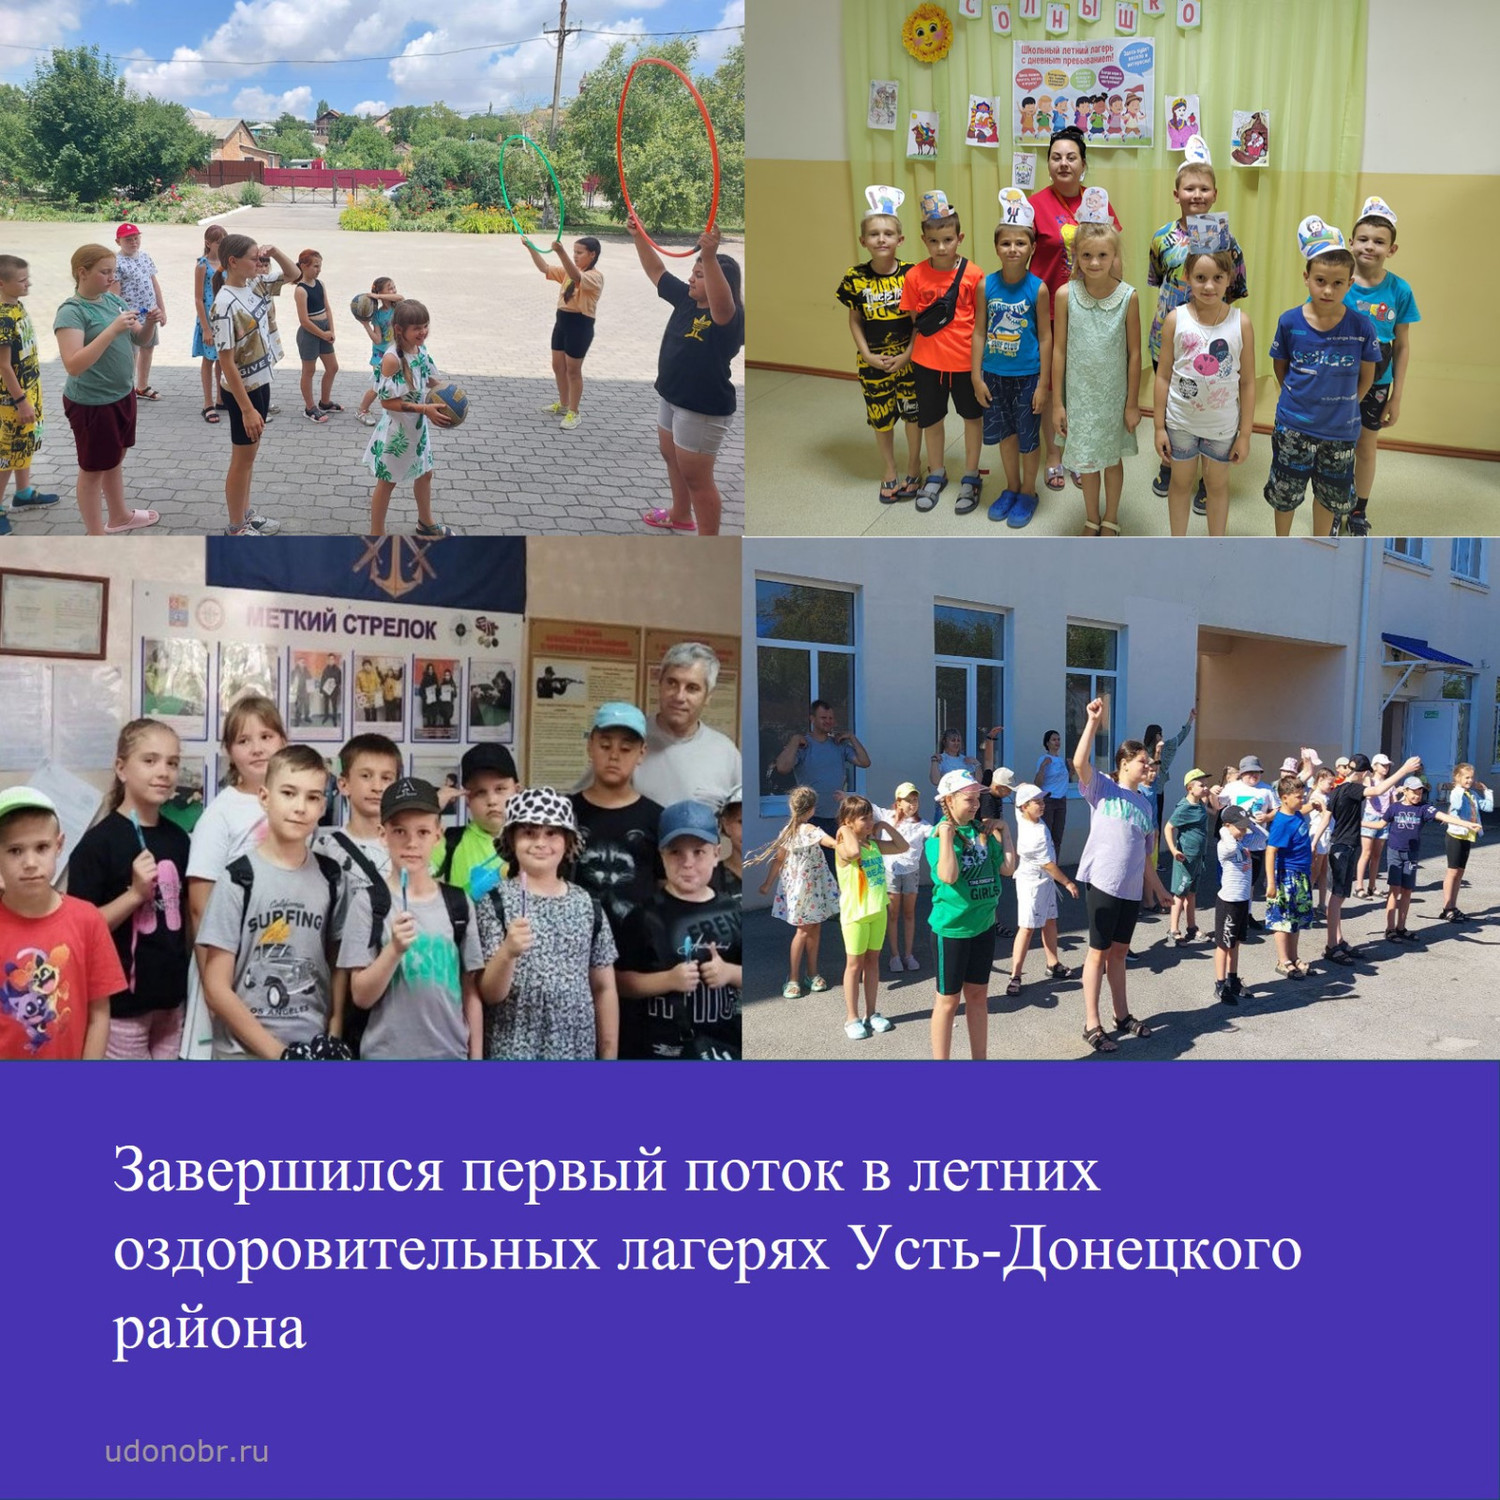 Завершился первый поток в летних оздоровительных лагерях Усть-Донецкого района